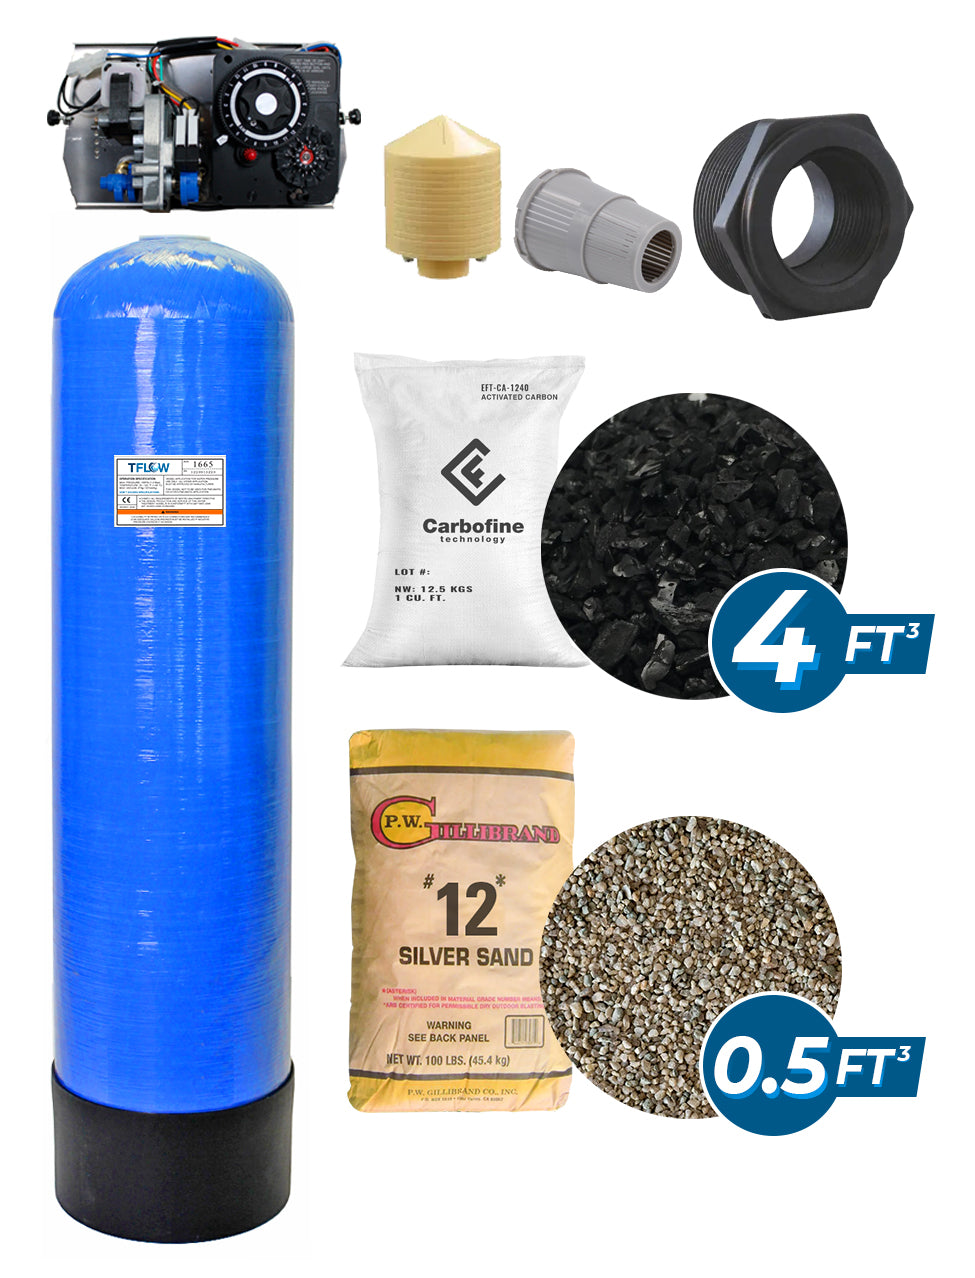 Paquete de Filtración con Carbón Activado (CARBOFINE) - 4 Pies Cúbicos - 16" x 65" -  Válvula Electromecánica KMATRIC 27F - TFLOW